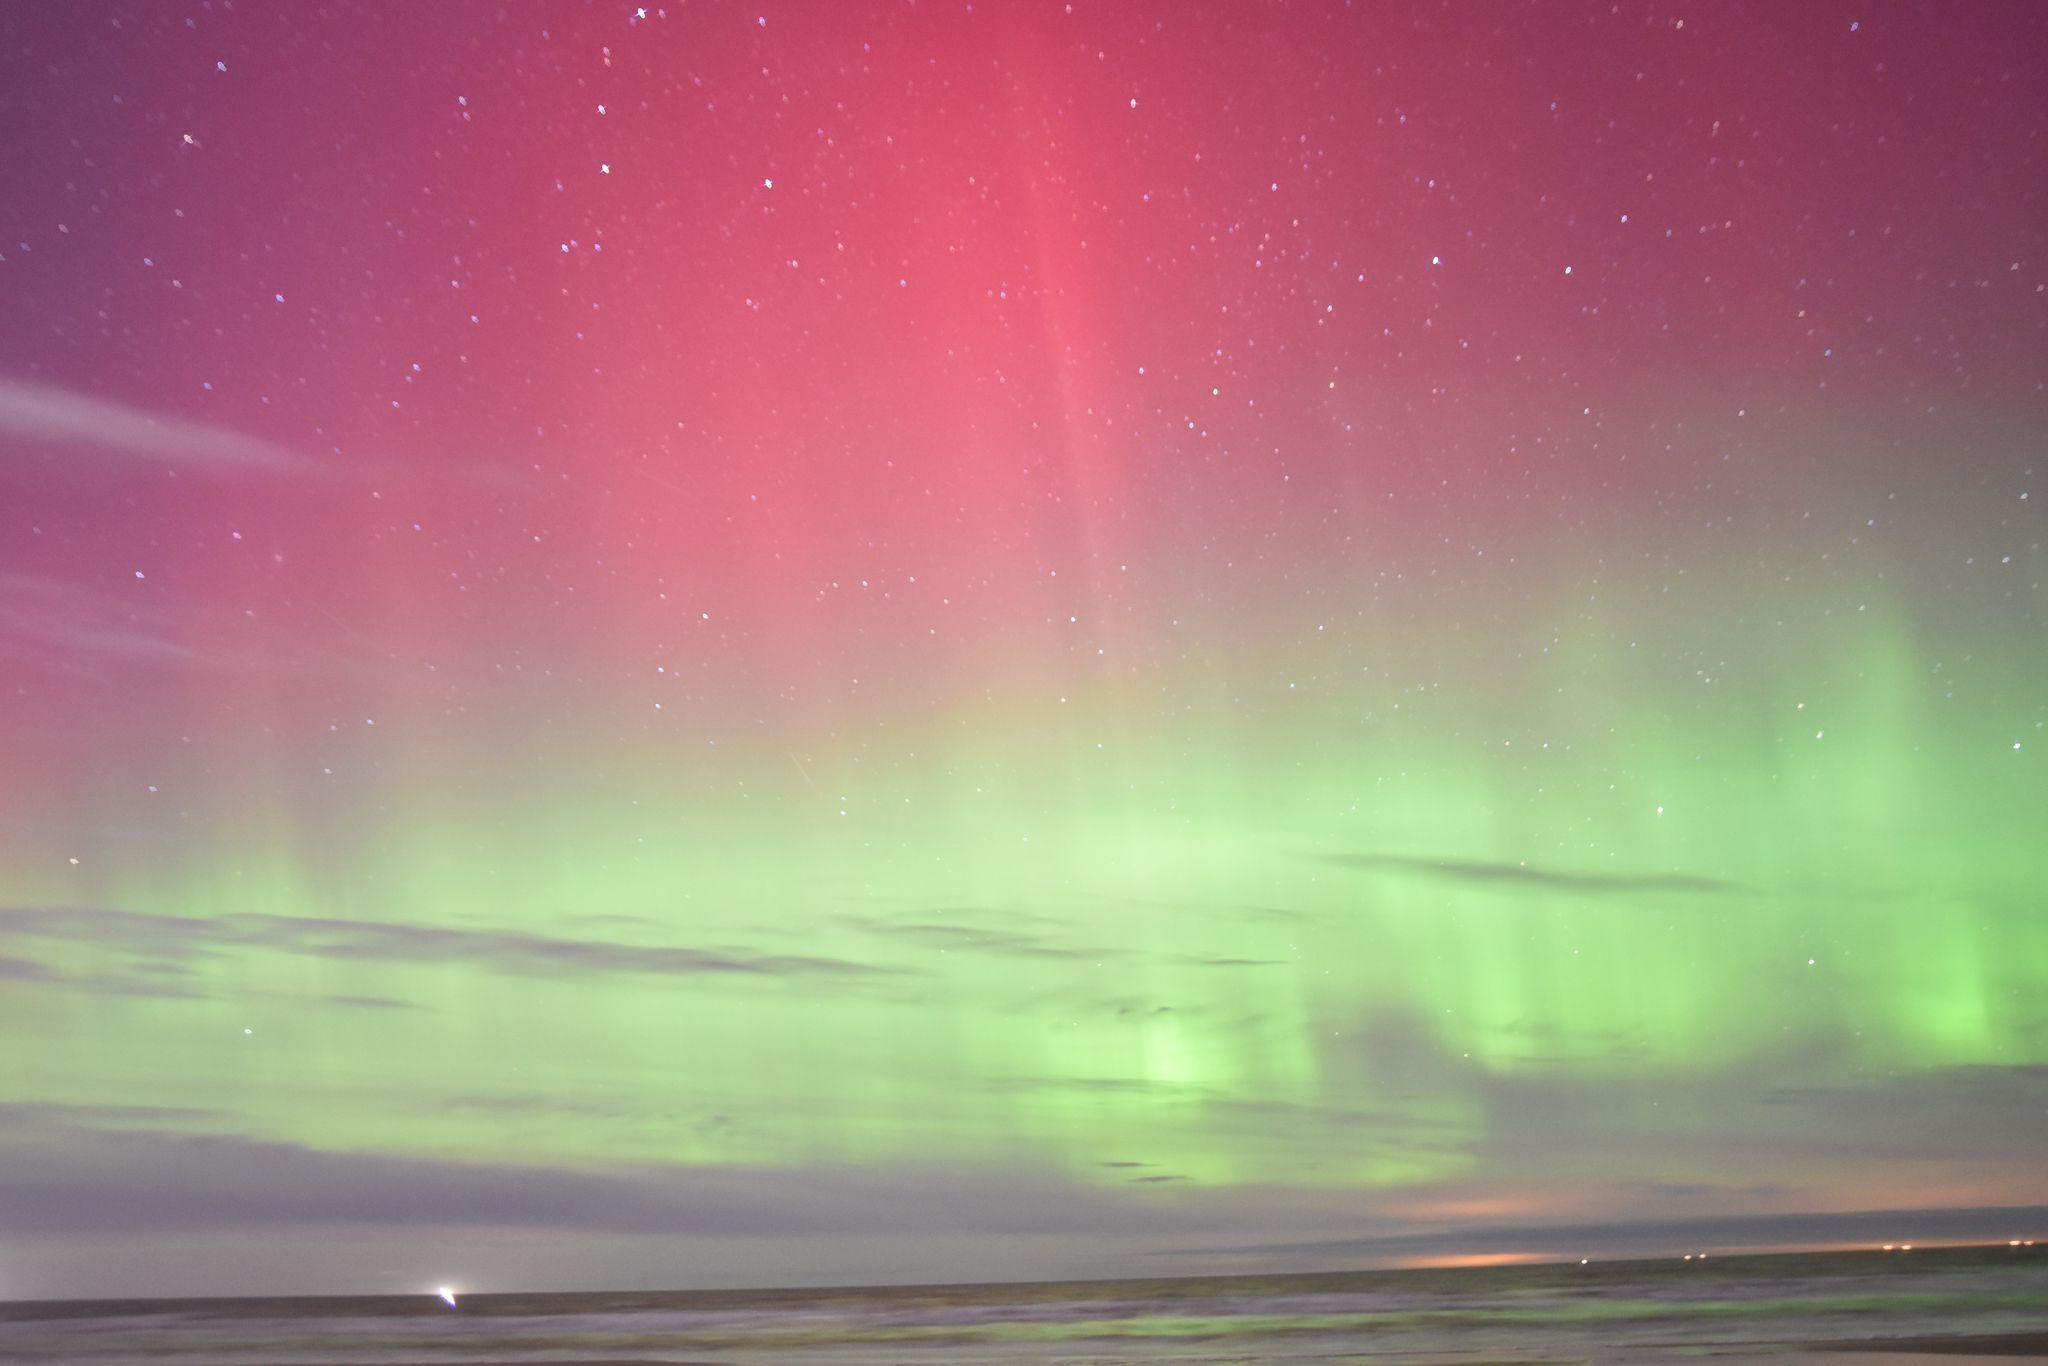 Com aurora boreal, Islândia enfrenta um problema: os turistas